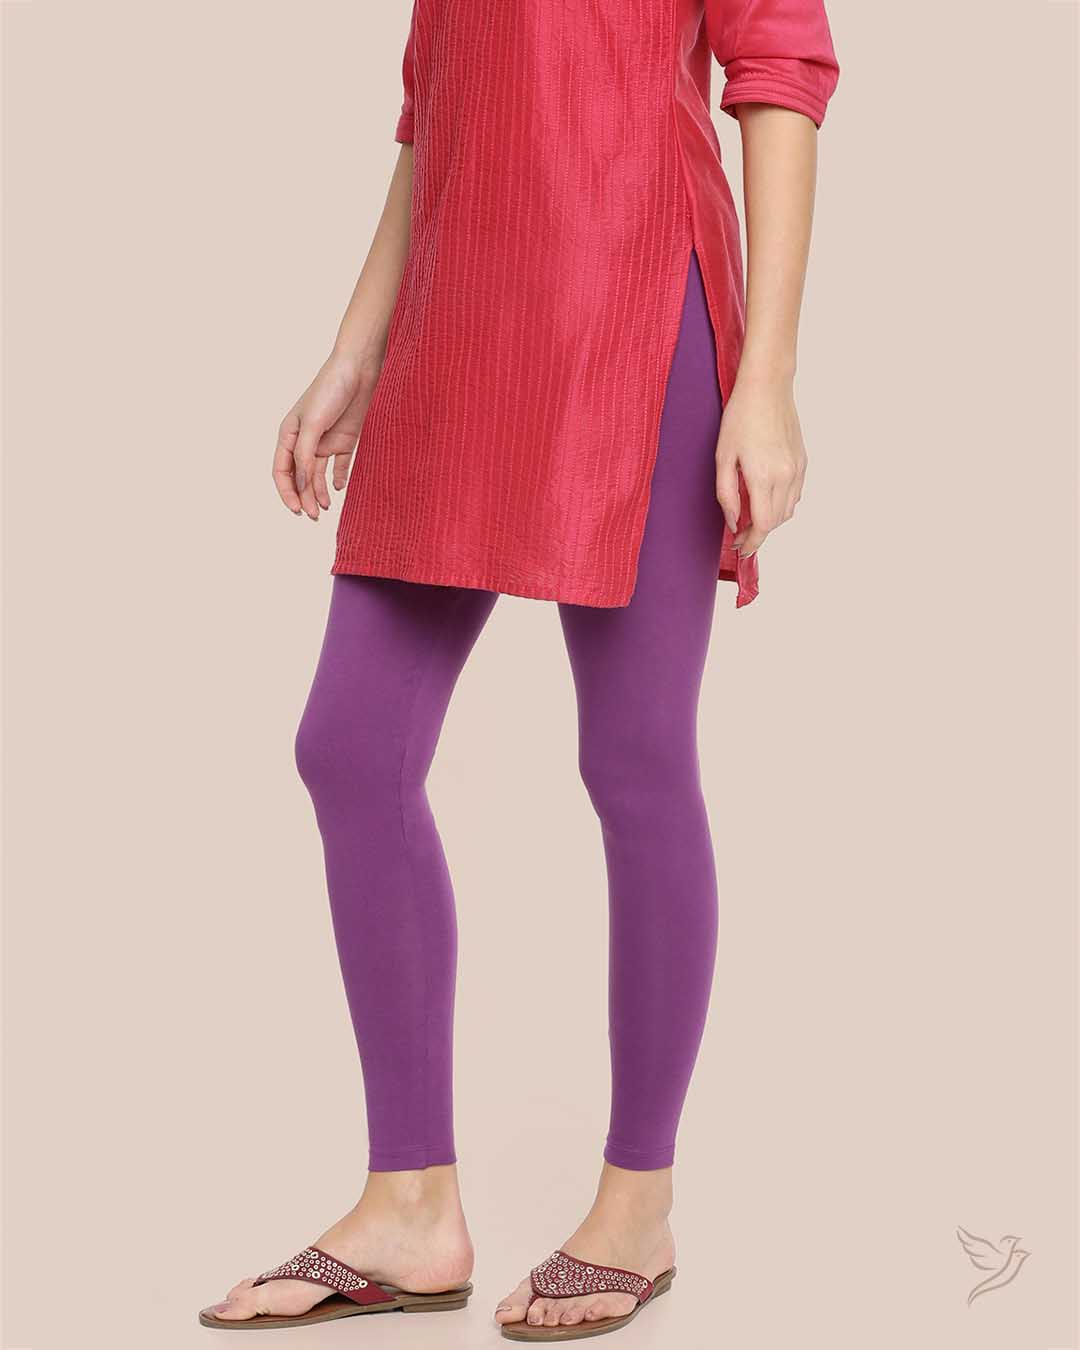 Vapour Violet Cotton Ankle Legging for Women